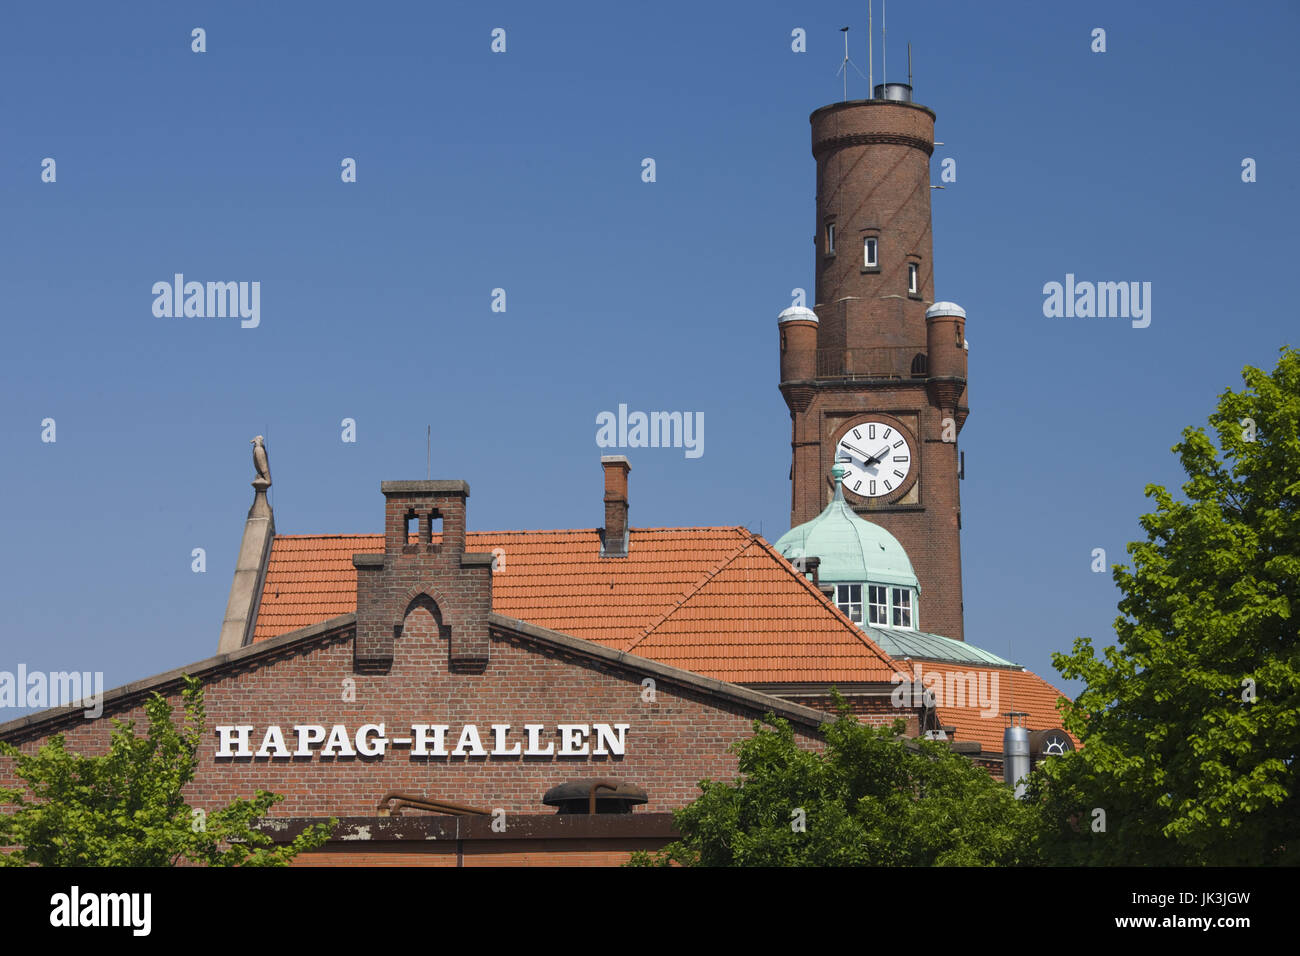 Germany, Niedersachsen, Cuxhaven, Hapag-Hallen Passenger terminal museum, exterior, Stock Photo